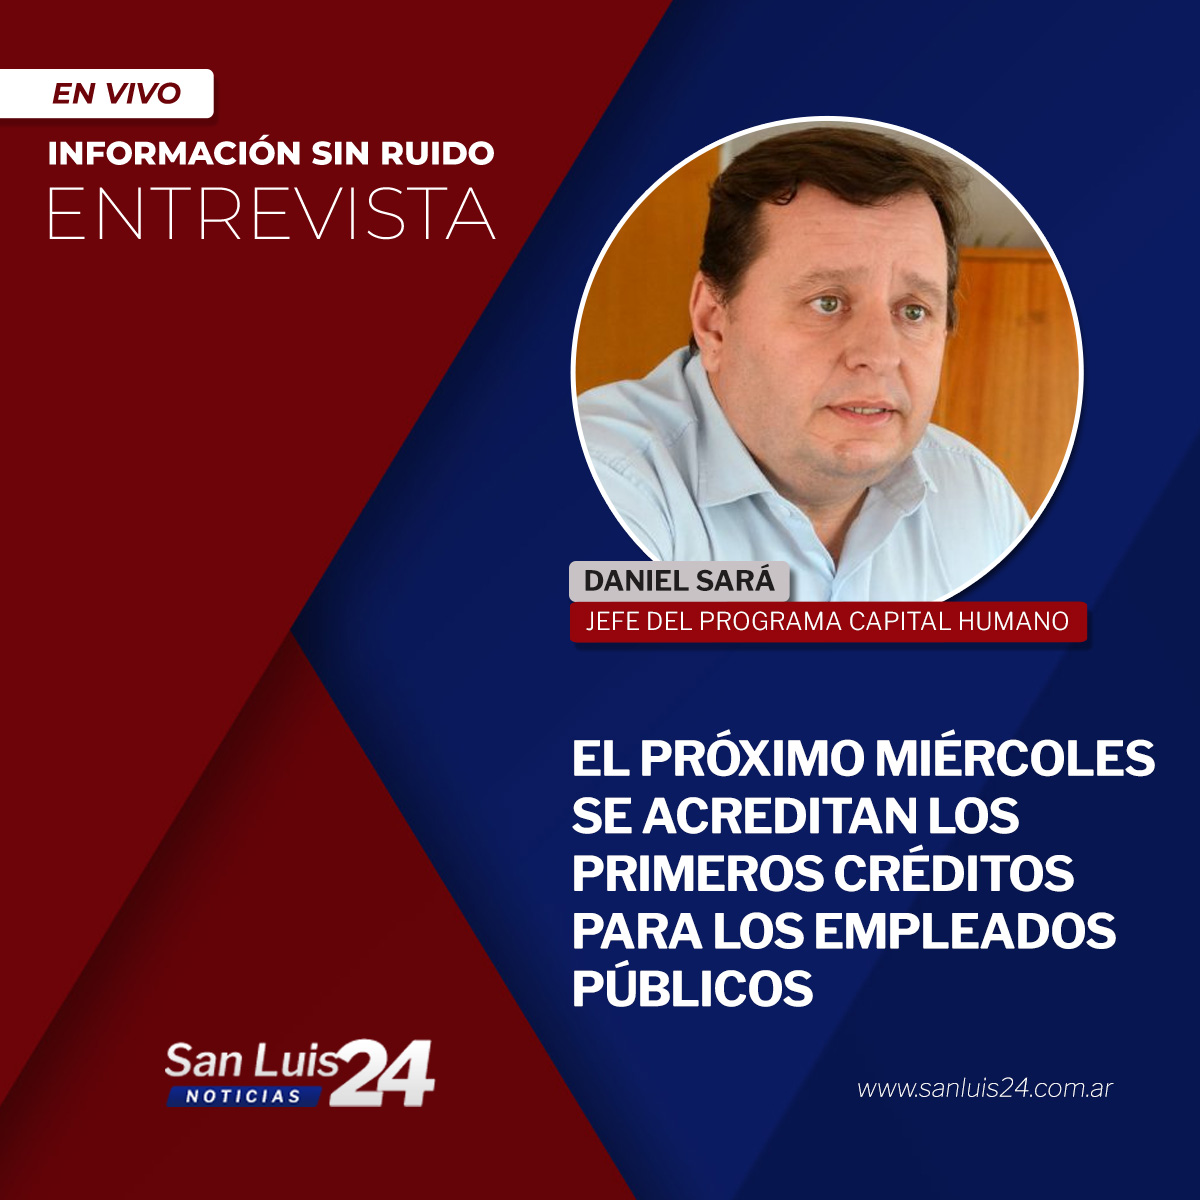 🎛️Mirá la entrevista en sanluis24.com.ar

#SanLuis24 #SanLuis #SanLuisNoticias #SanLuis24Noticias #SanLuisArgentina #NoticiasArgentina #NoticiasSanLuis #Créditos #EmpleadosPublicos